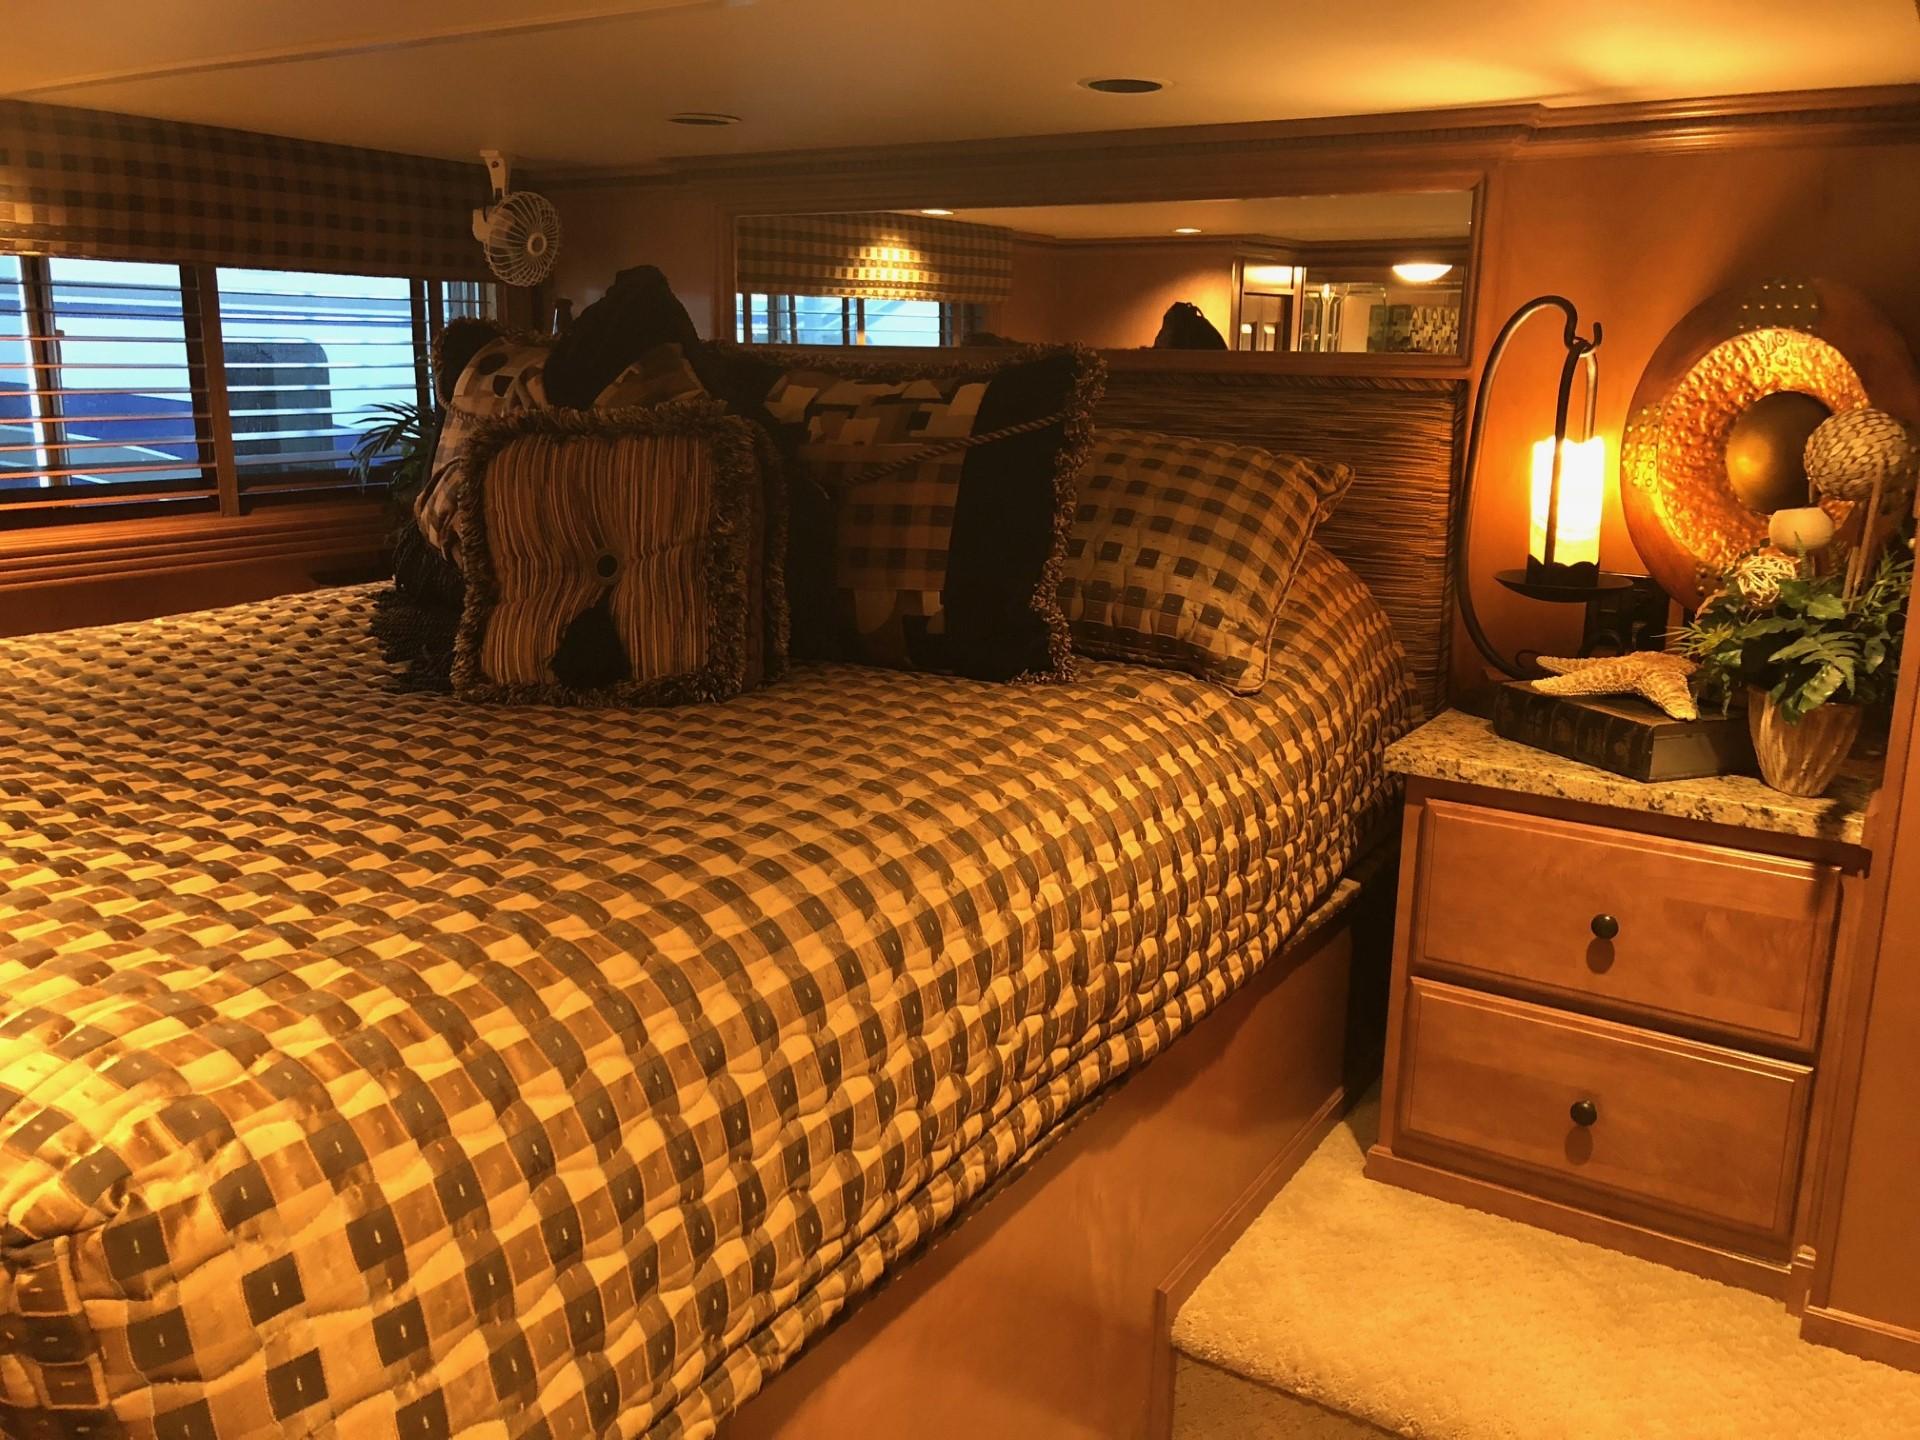 2008 Sumerset Houseboat 20' x 100'